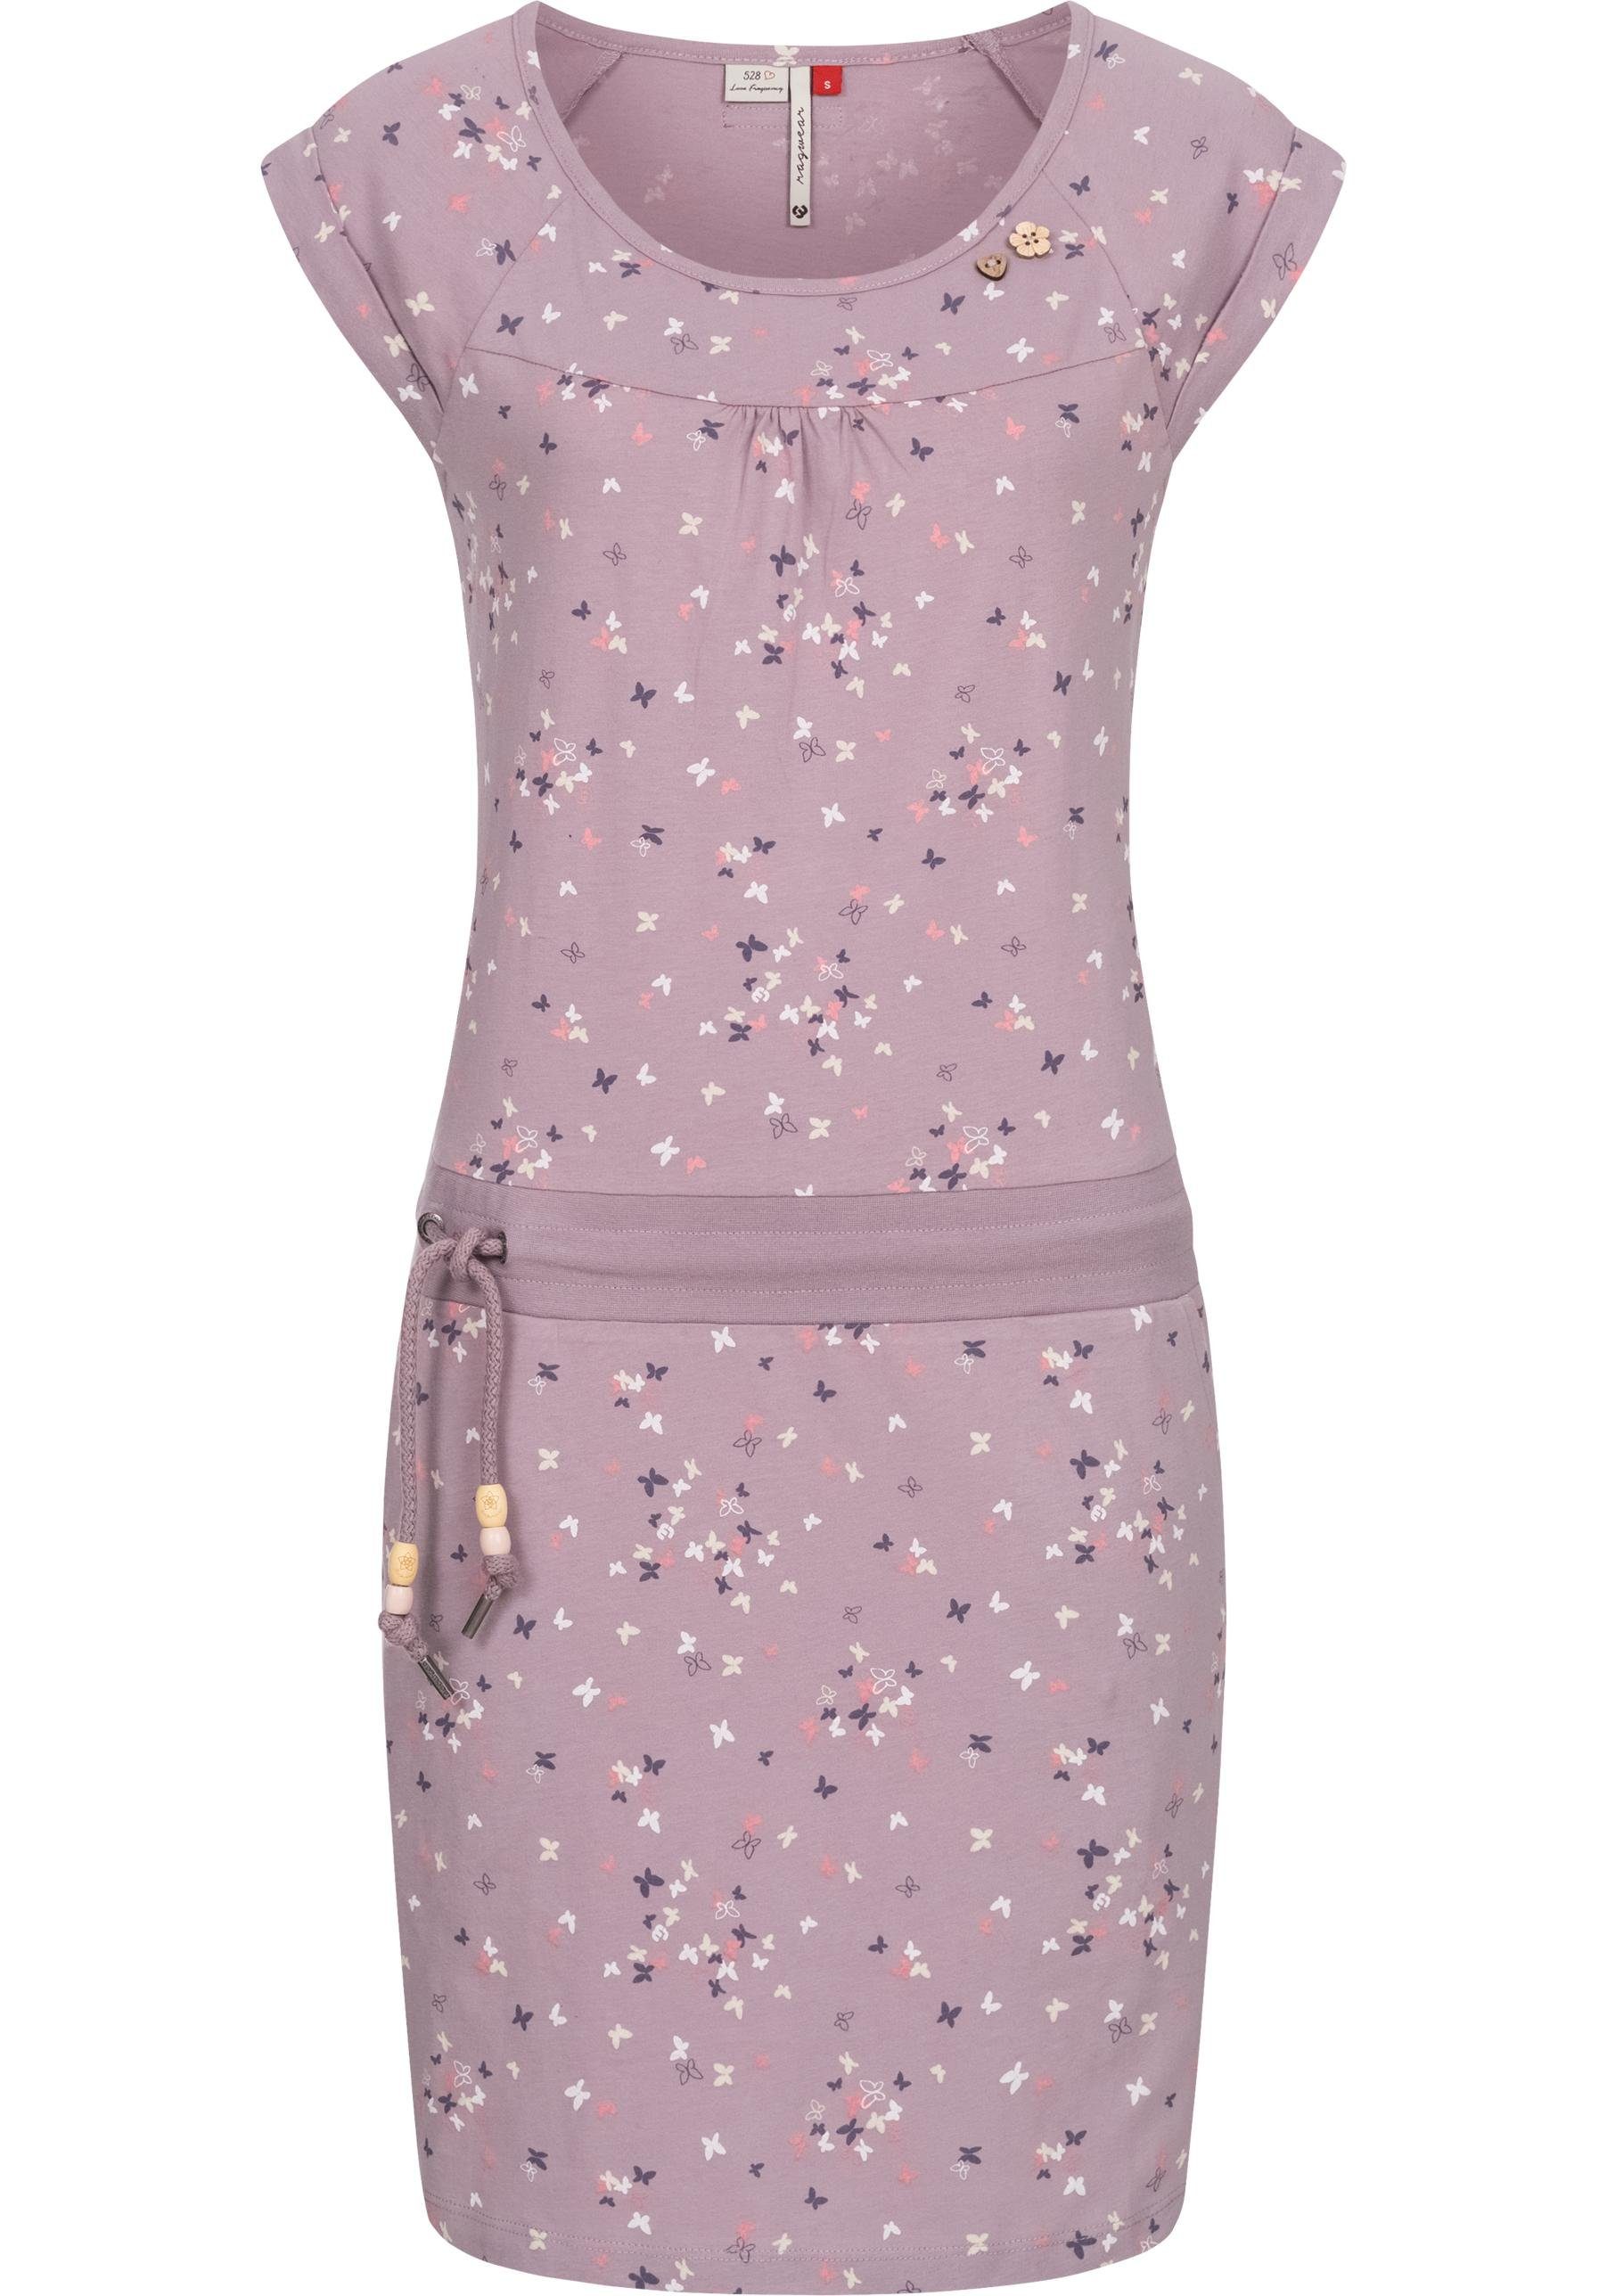 Ragwear Sommerkleid Penelope leichtes Baumwoll Kleid mit Print lavendel | Wickelkleider